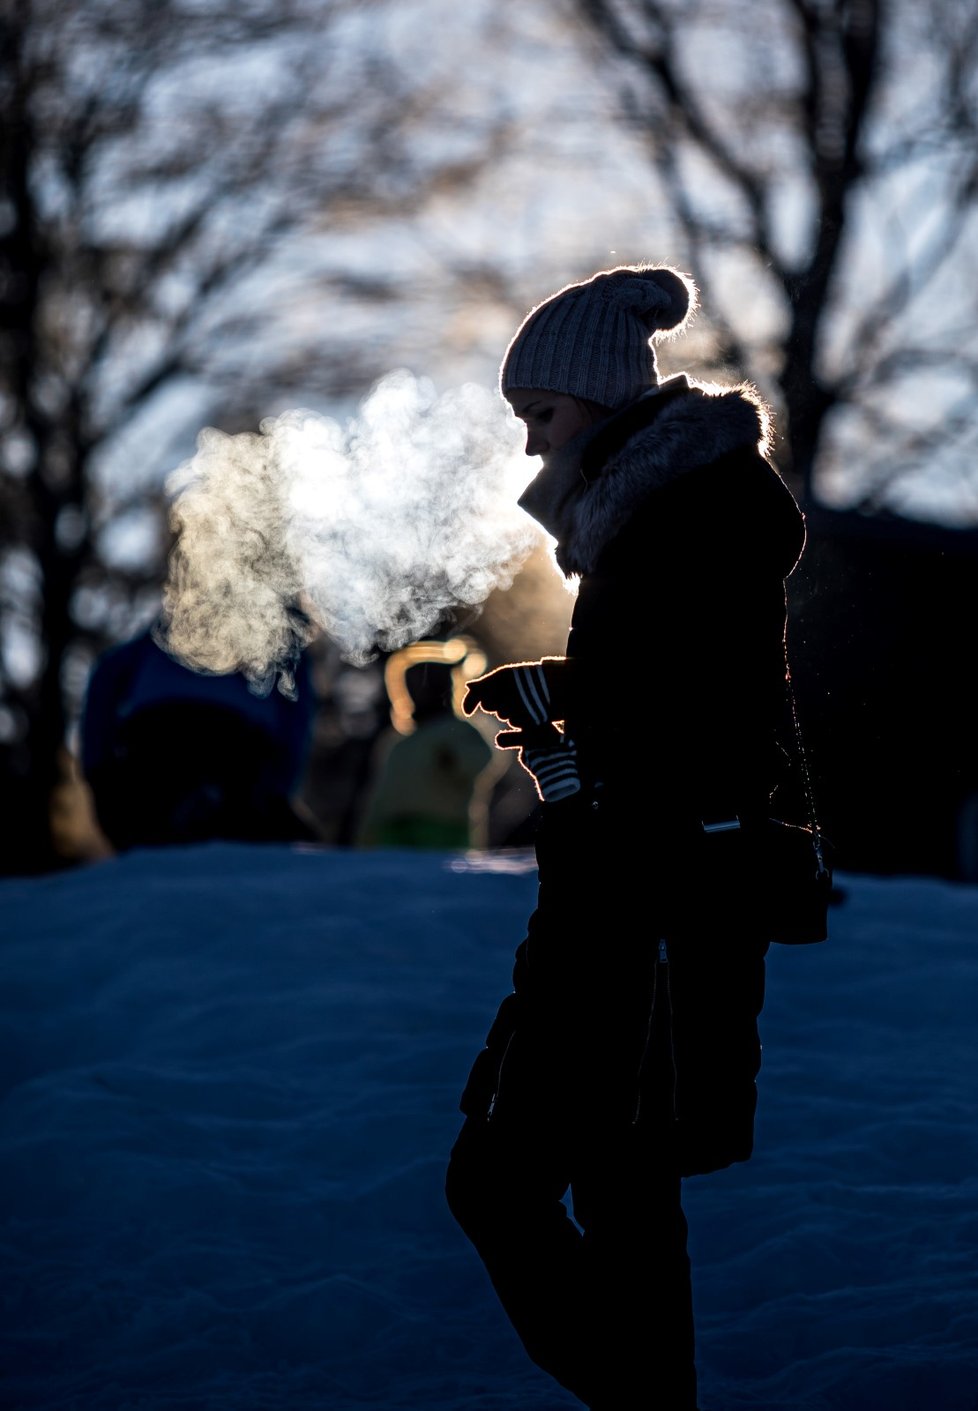 Na Klíny v Krušných horách přijelo mnoho lidí za zimními radovánkami, i když lyžařské areály, respektive lanovky a hotely v nich, jsou nyní uzavřené kvůli vládním opatřením proti pandemii koronaviru (30. 12. 2020).